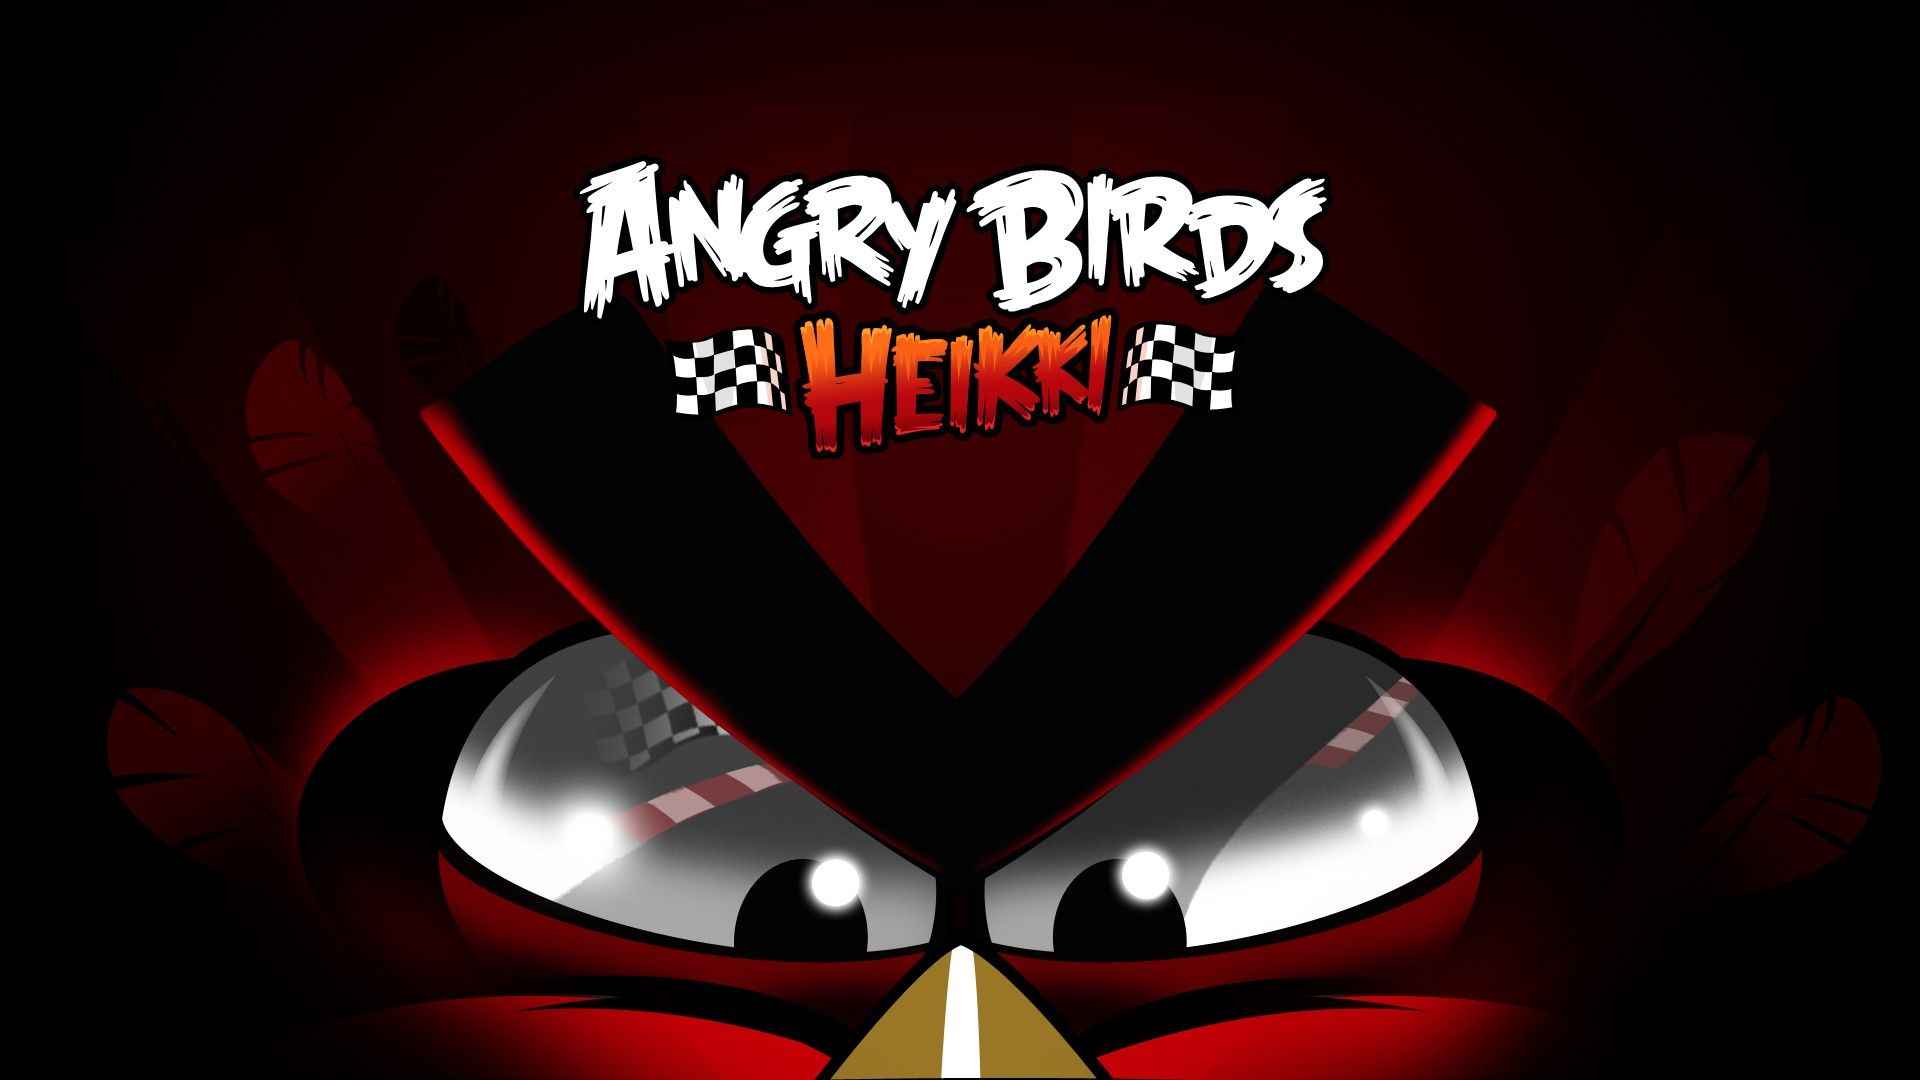 Angry birds heikki wallpaper | Wallpaper Wide HD